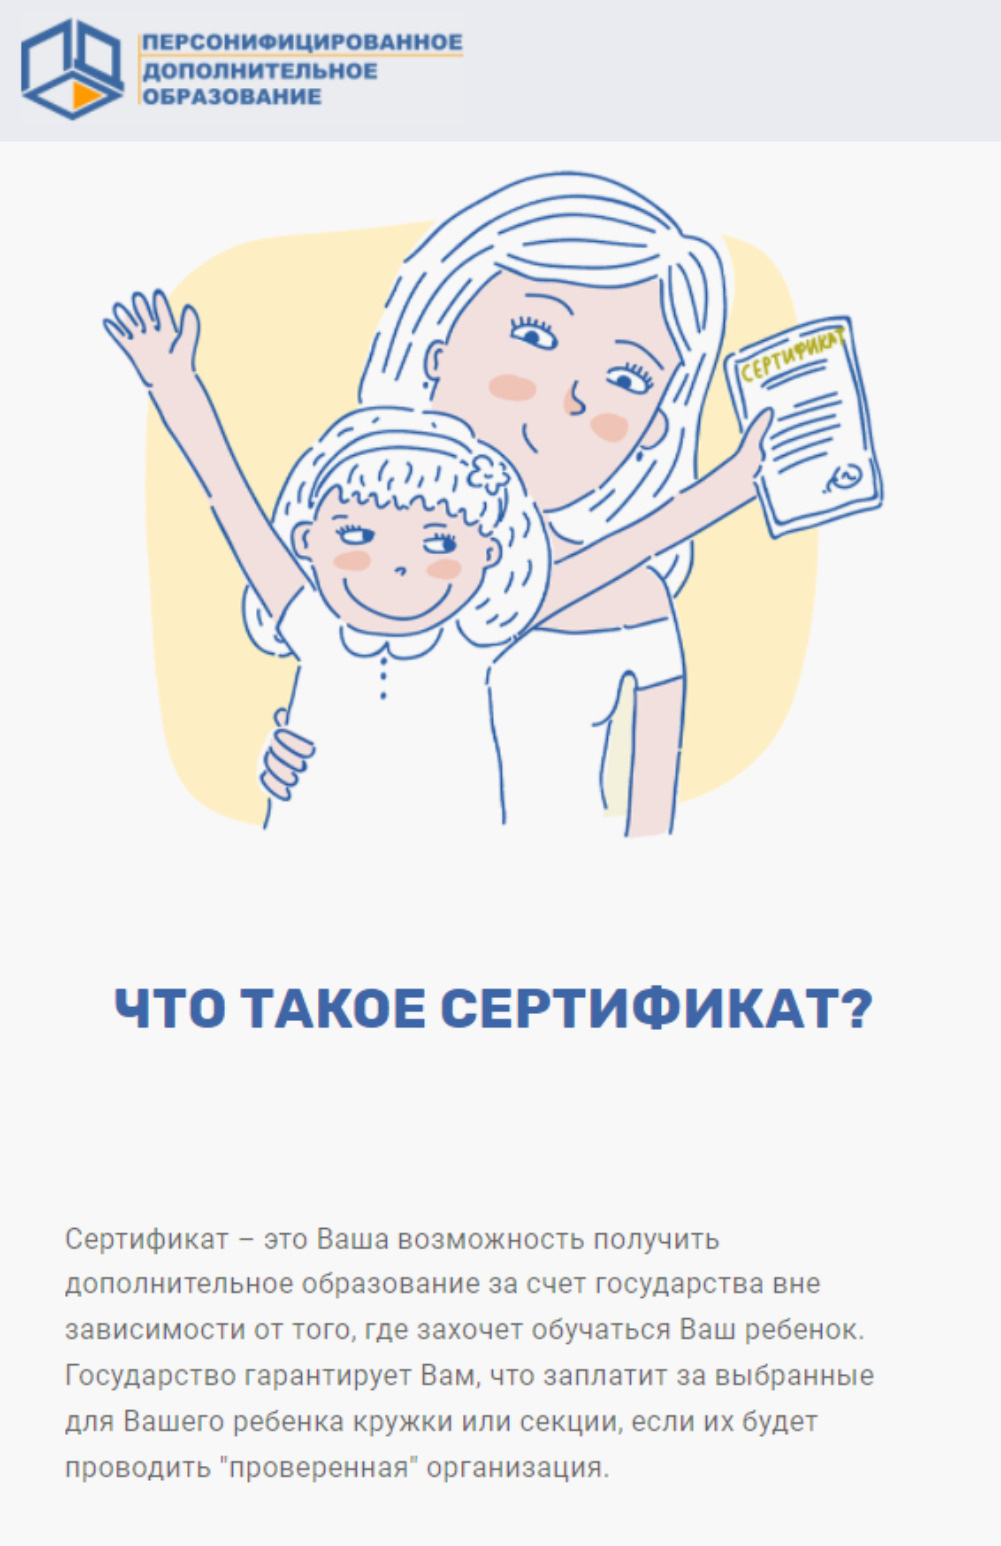 Так описывают суть сертификатов на официальном портале персонифицированного дополнительного образования Ярославской области